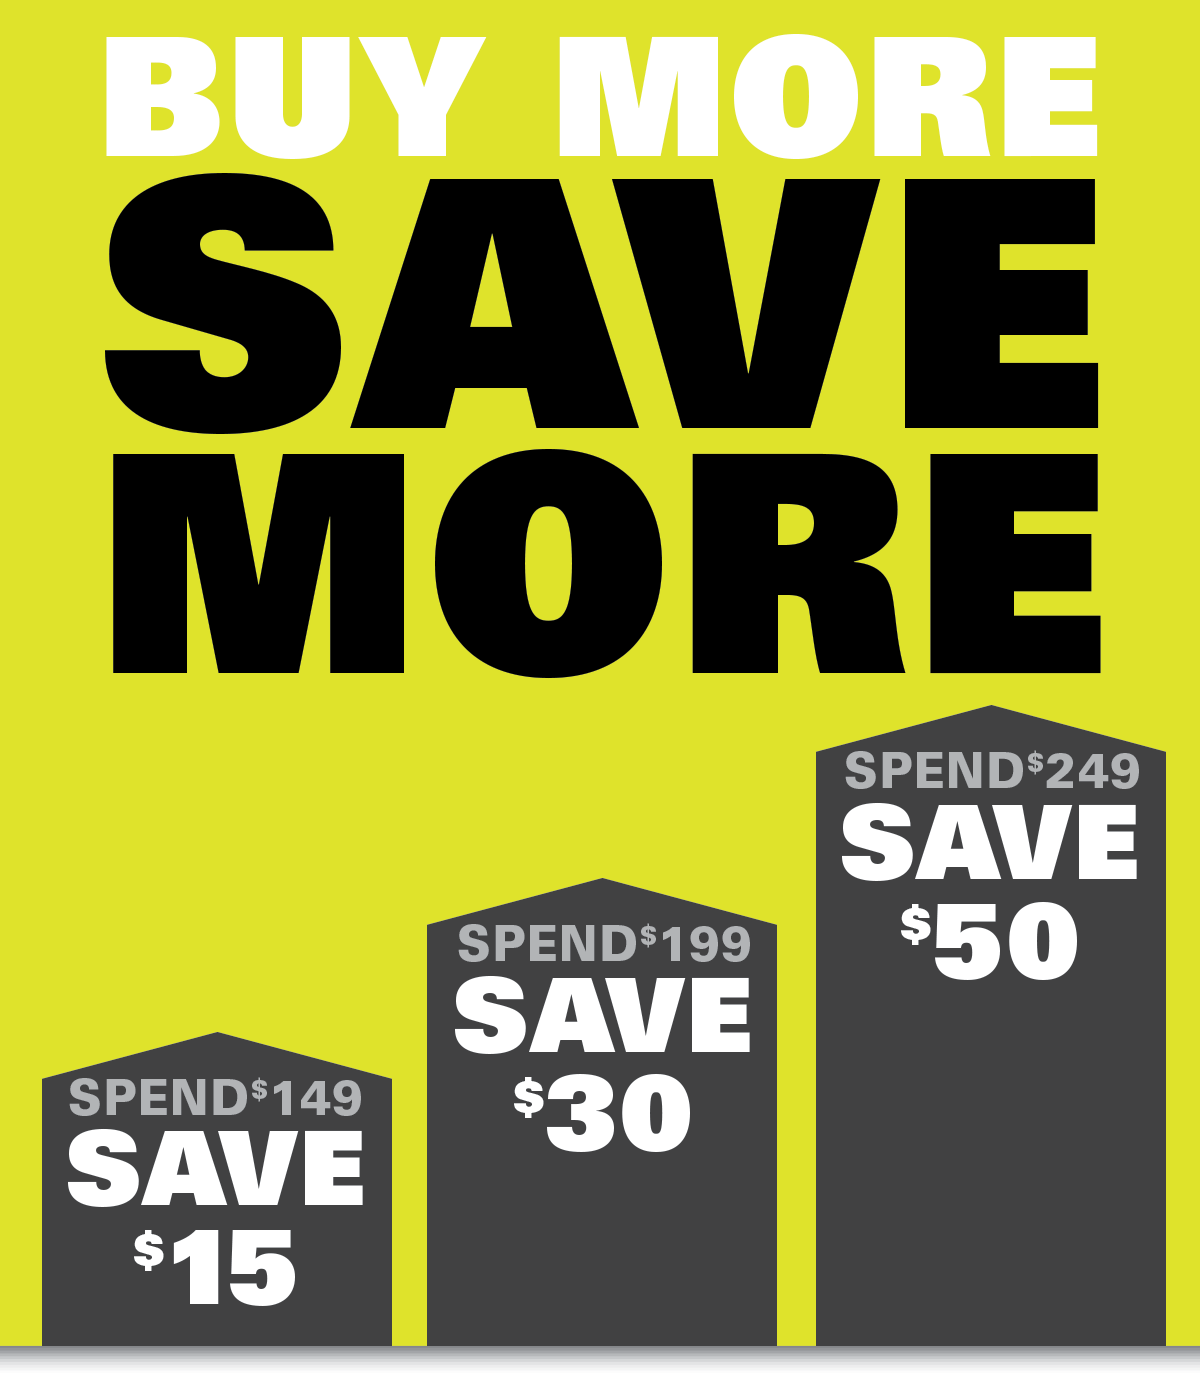 Buy More to Save More. SPEND $149, SAVE $15. SPEND $199, SAVE $30. SPEND $249, SAVE $50